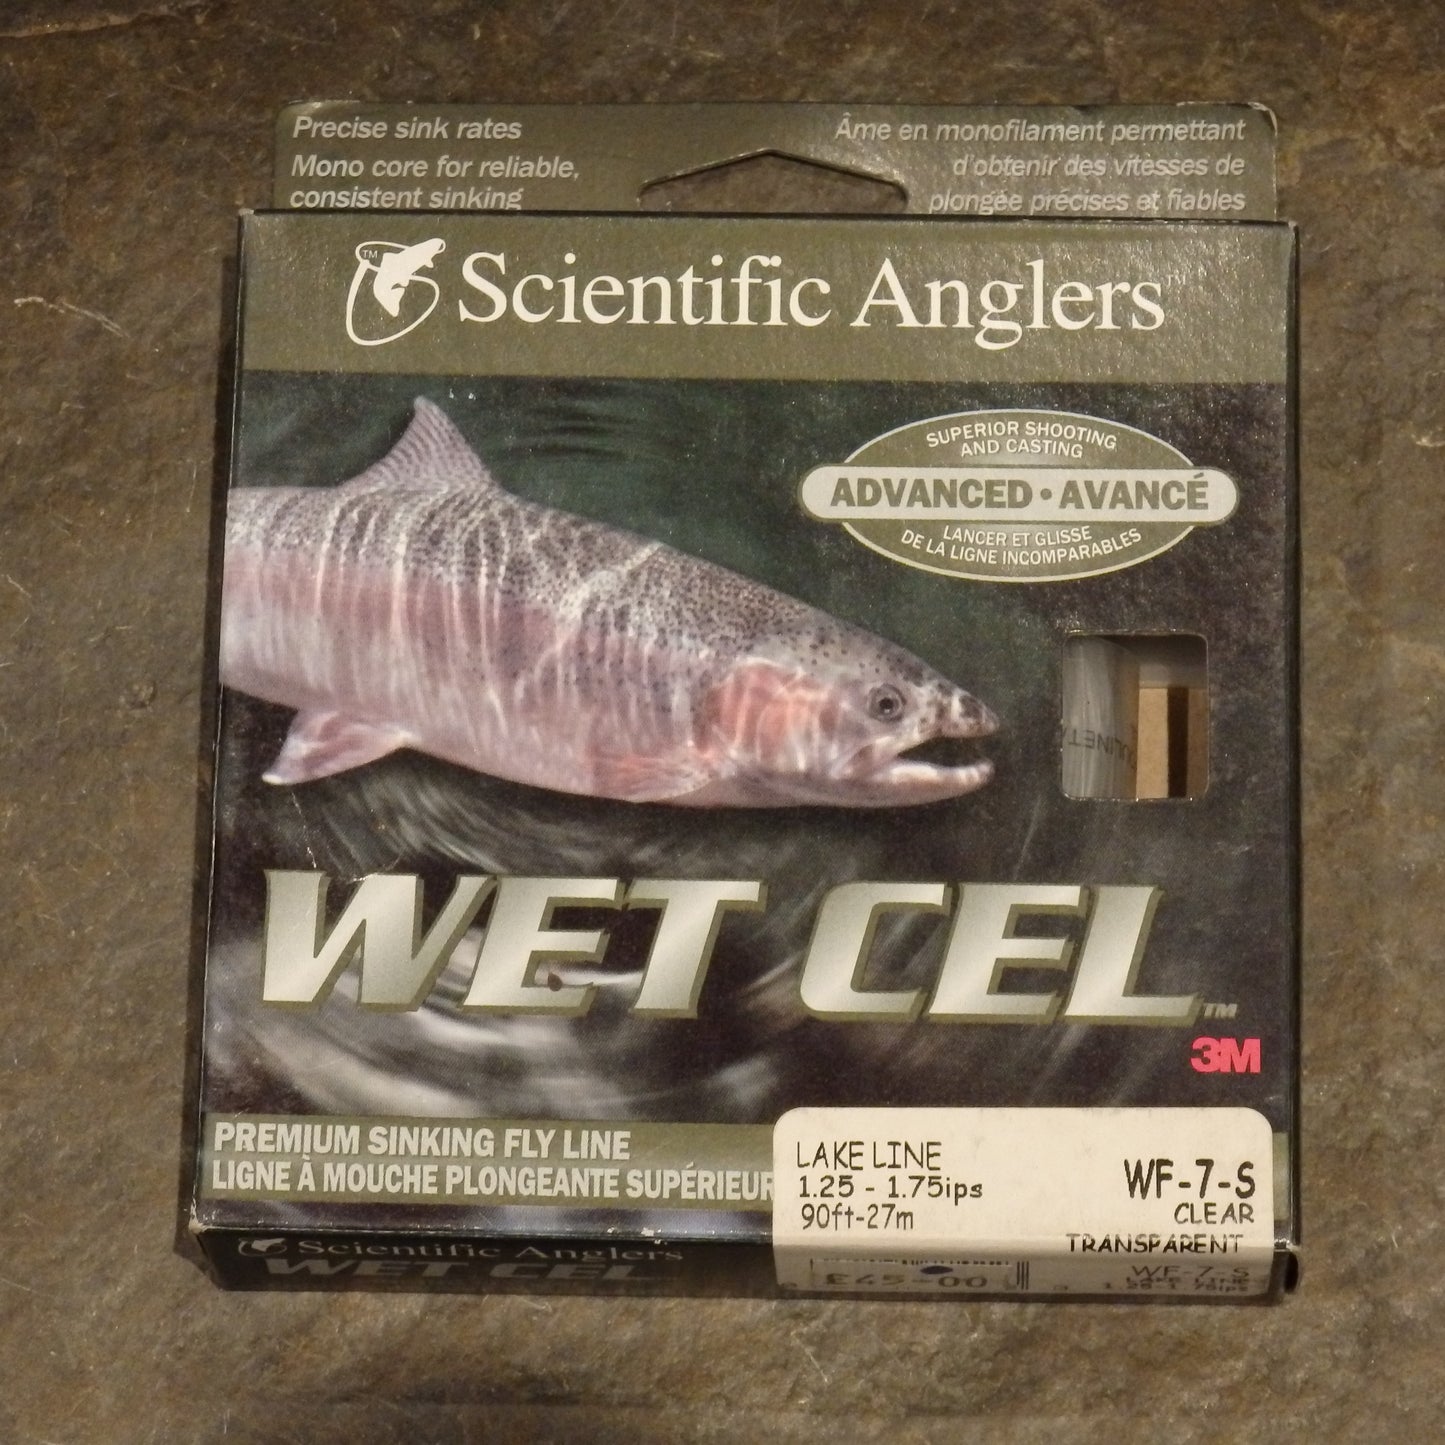 Scientific Anglers Wet Cel WF 7 S